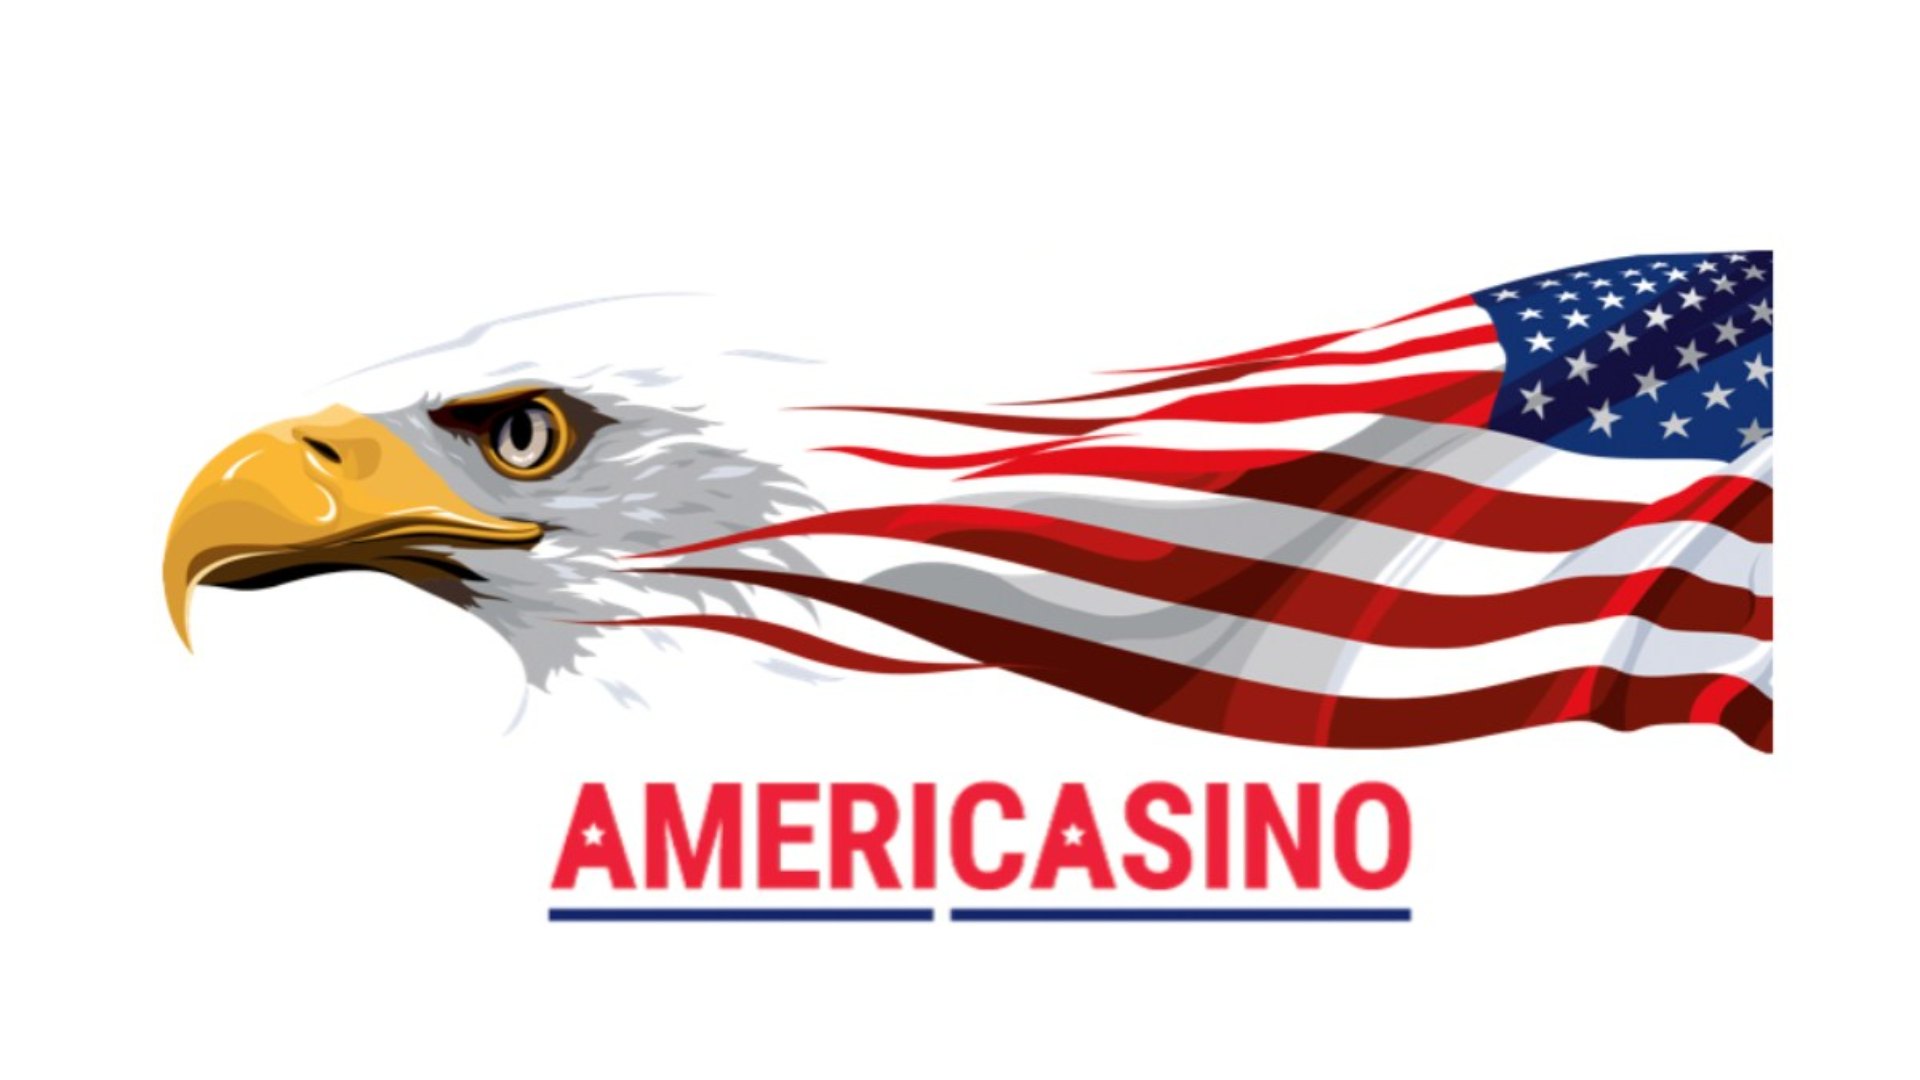 O Americasino.com tem como alvo os jogadores dos EUA e fornecerá a ele uma ampla variedade de informações.